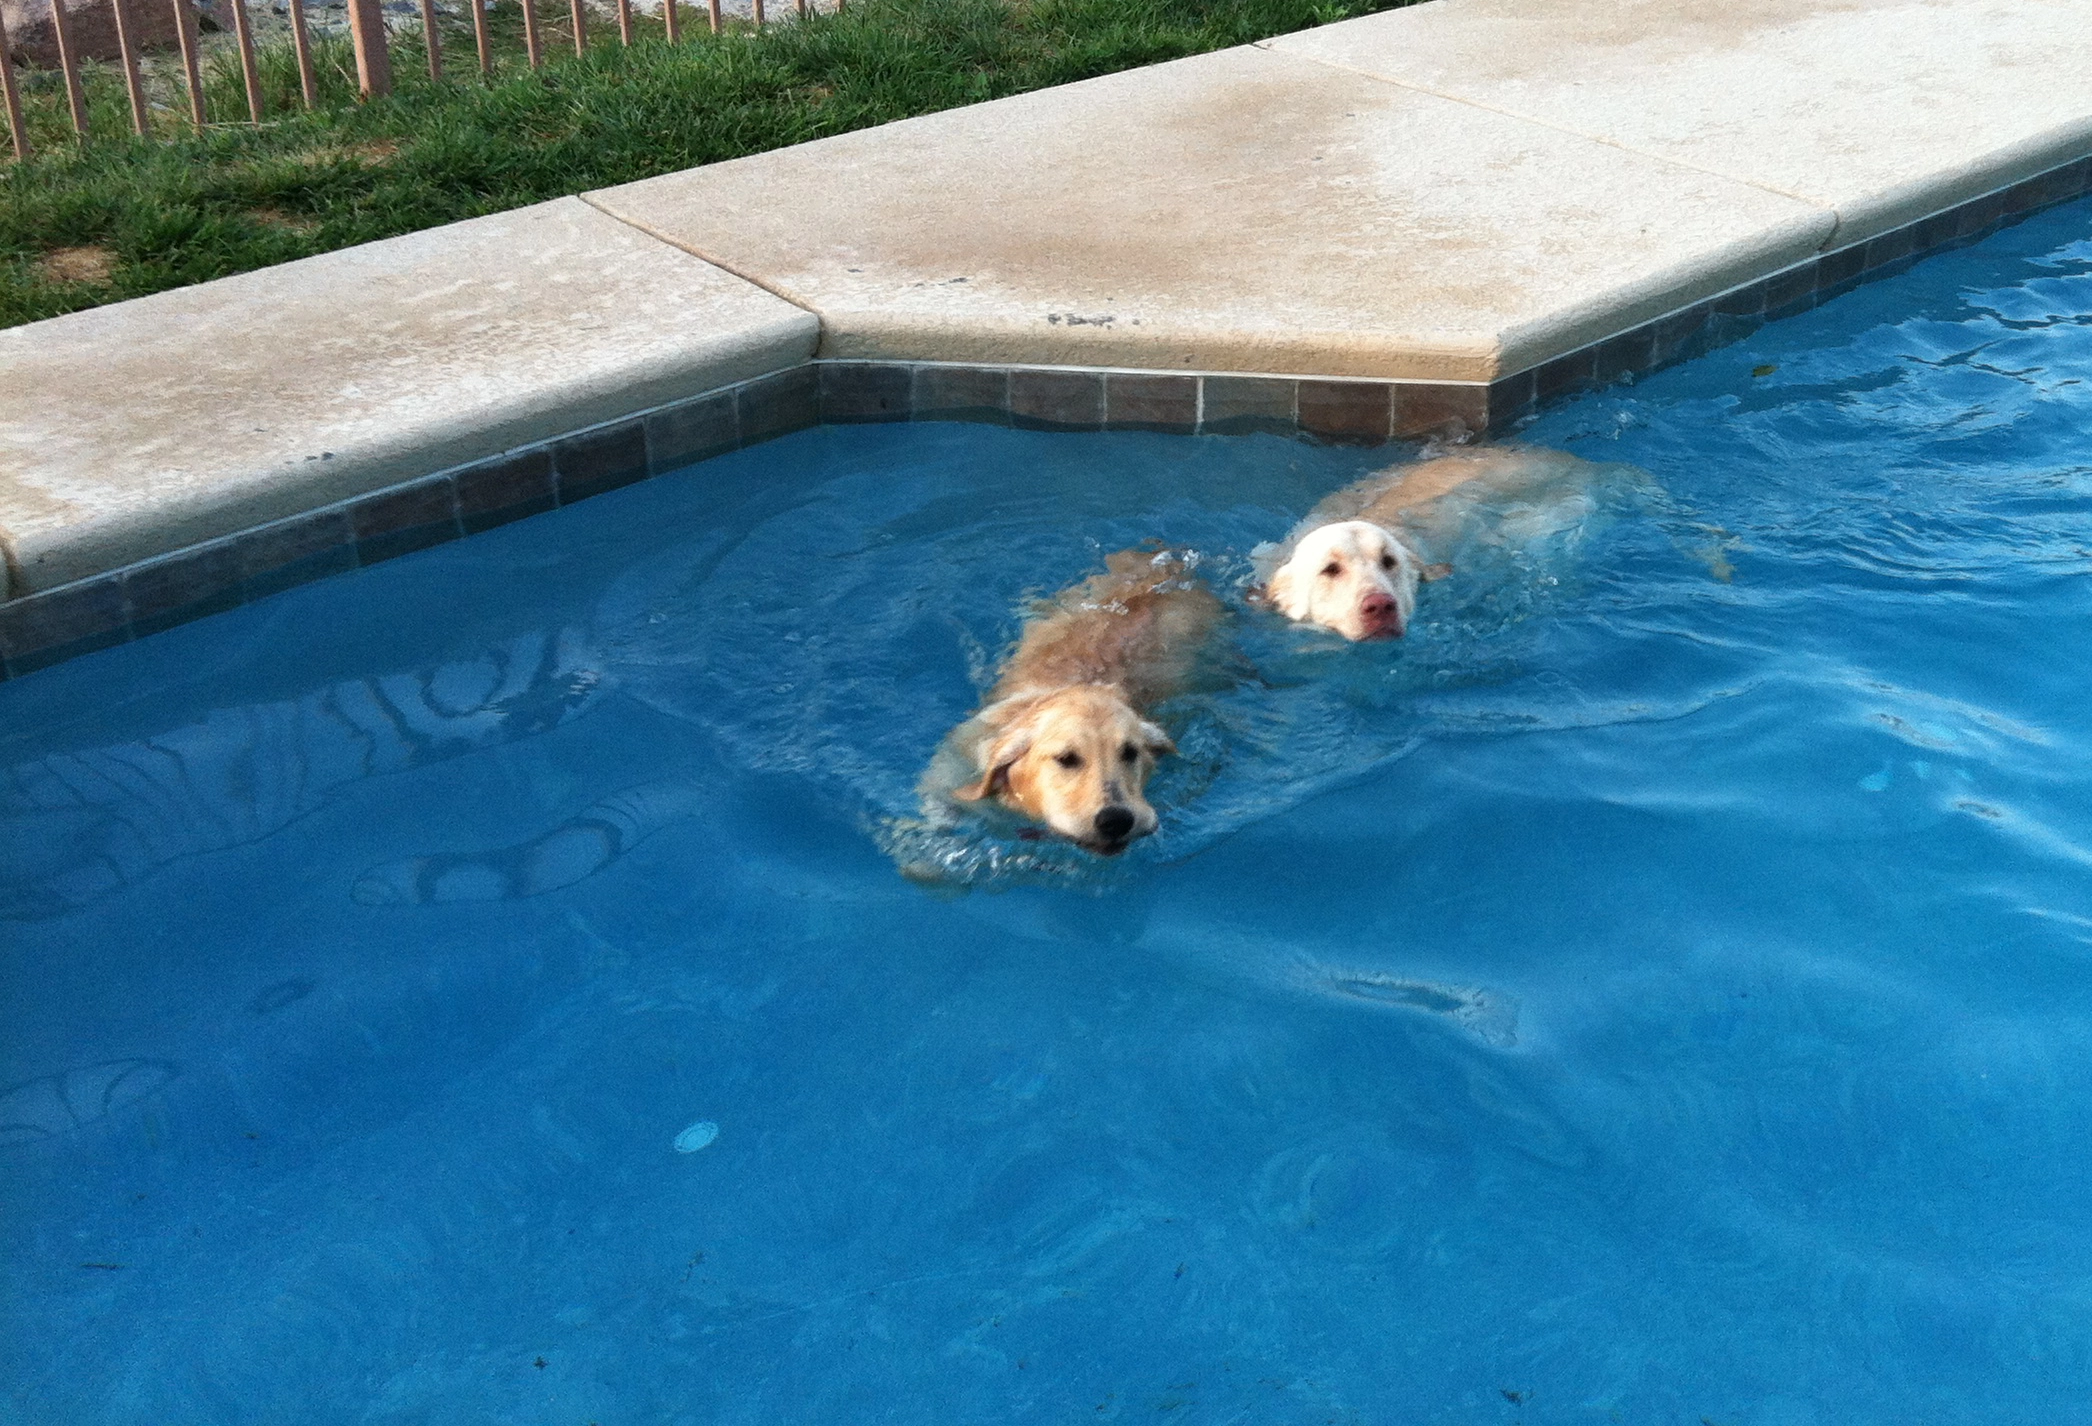 do golden retrievers like to swim - with her friend